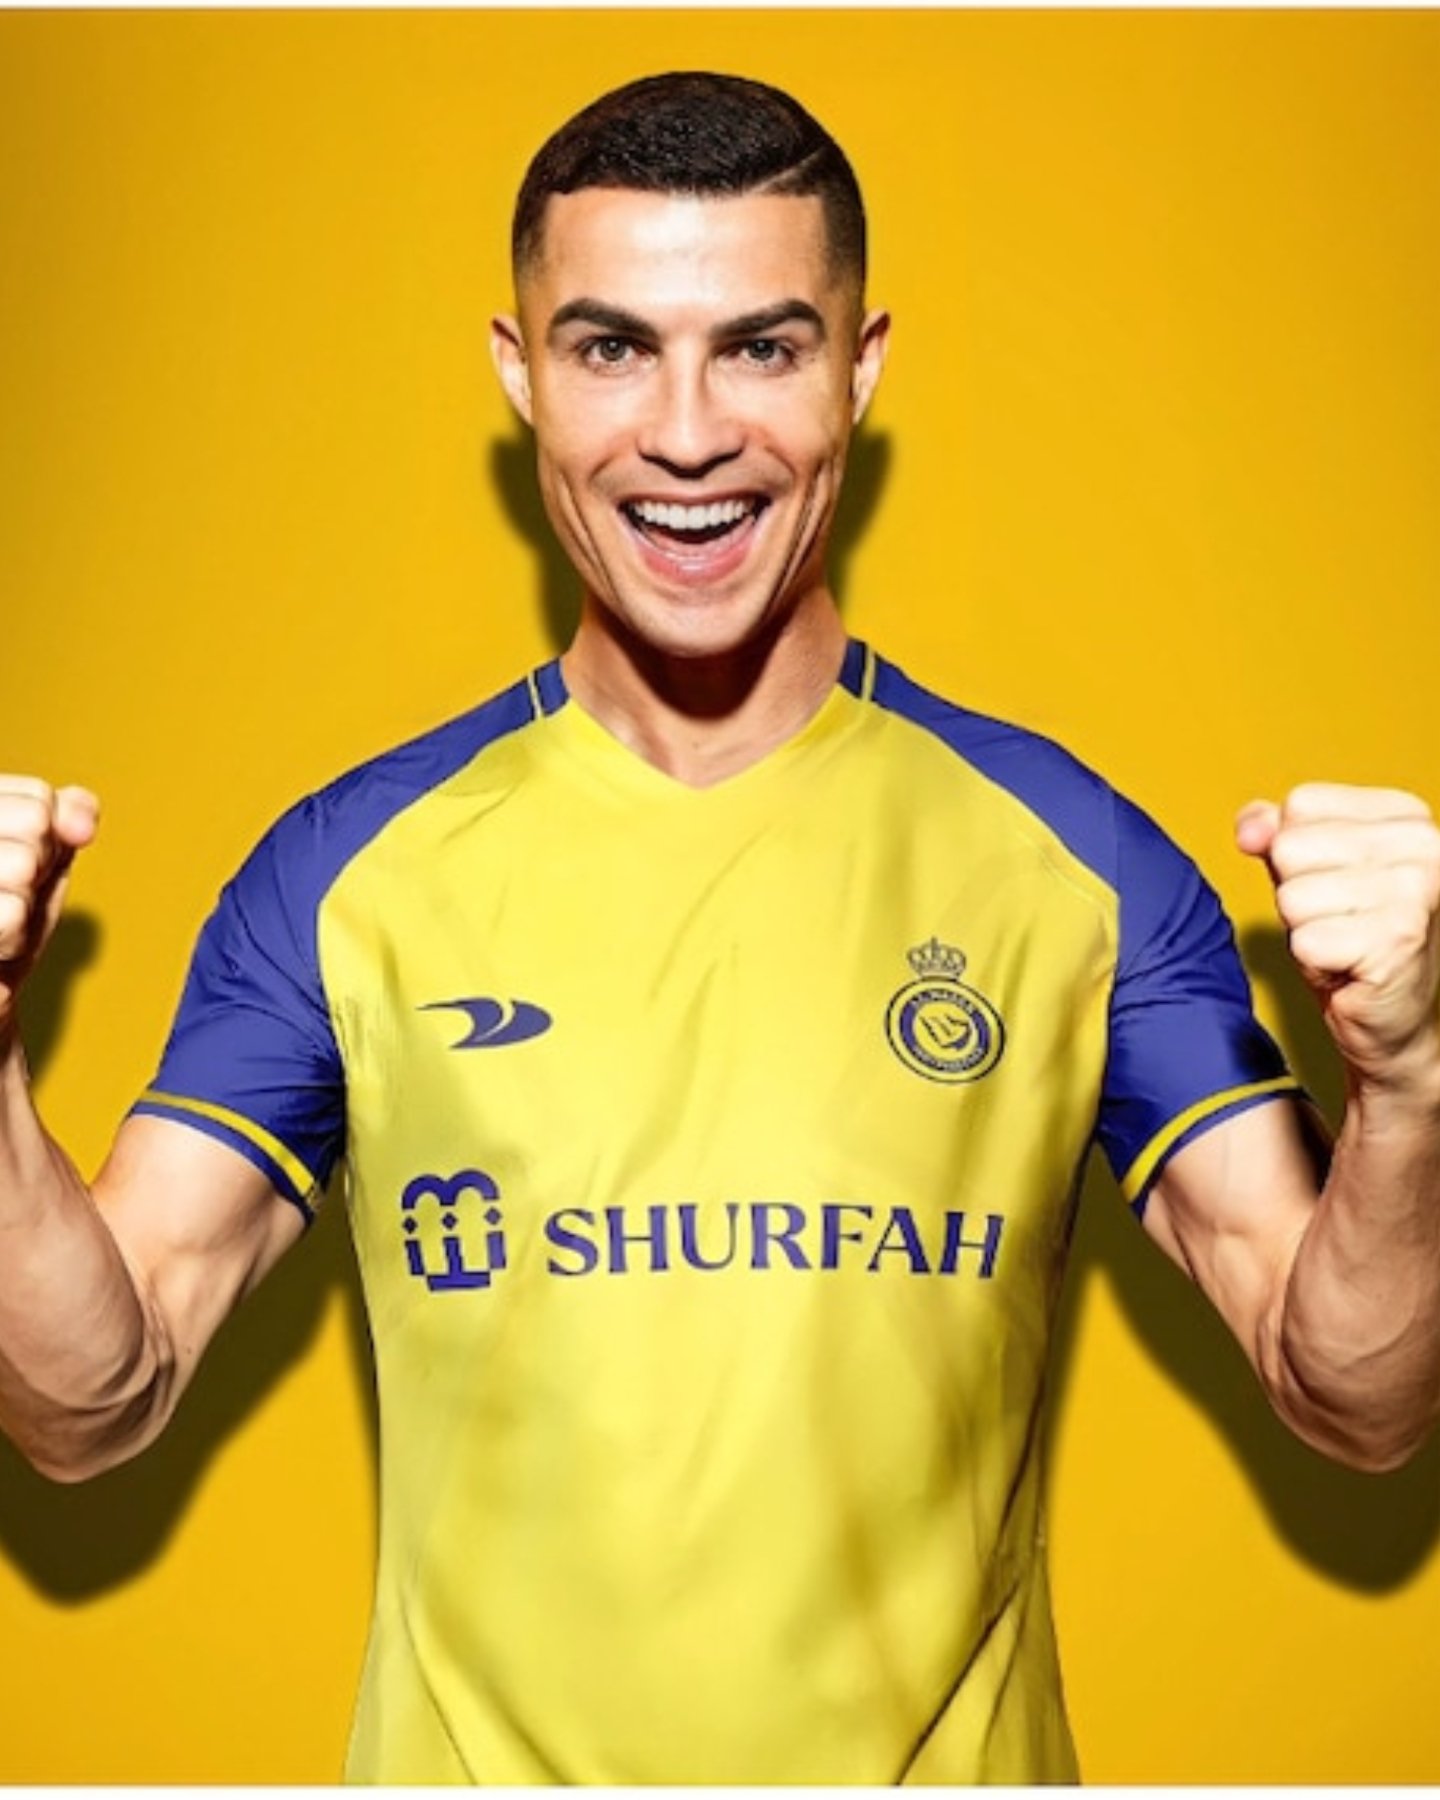 No Doubt, I’m Still a Unique Player—Cristiano Ronaldo